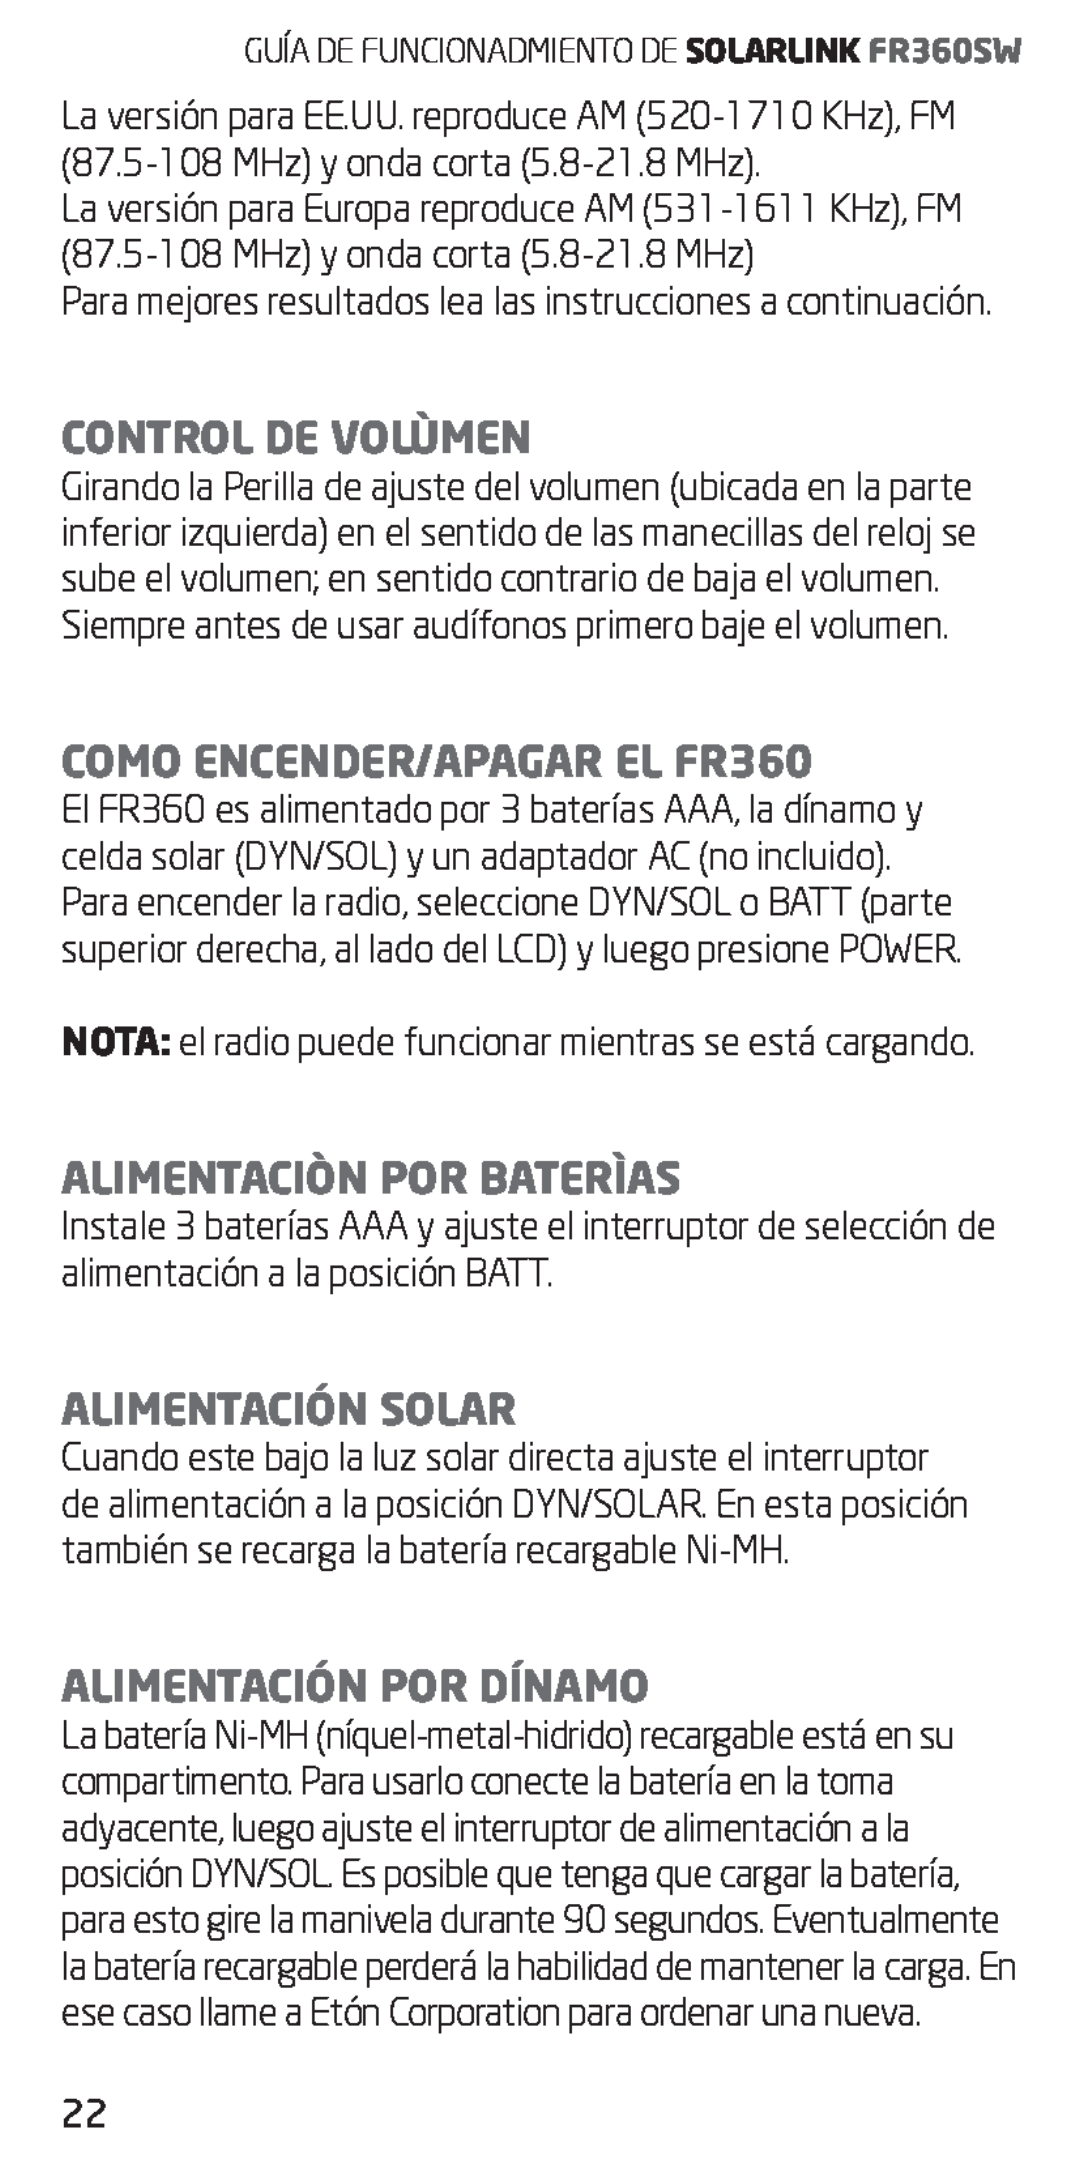 Eton owner manual Control De Volùmen, COMO ENCENDER/APAGAR EL FR360, Alimentaciòn Por Baterìas, Alimentación Solar 